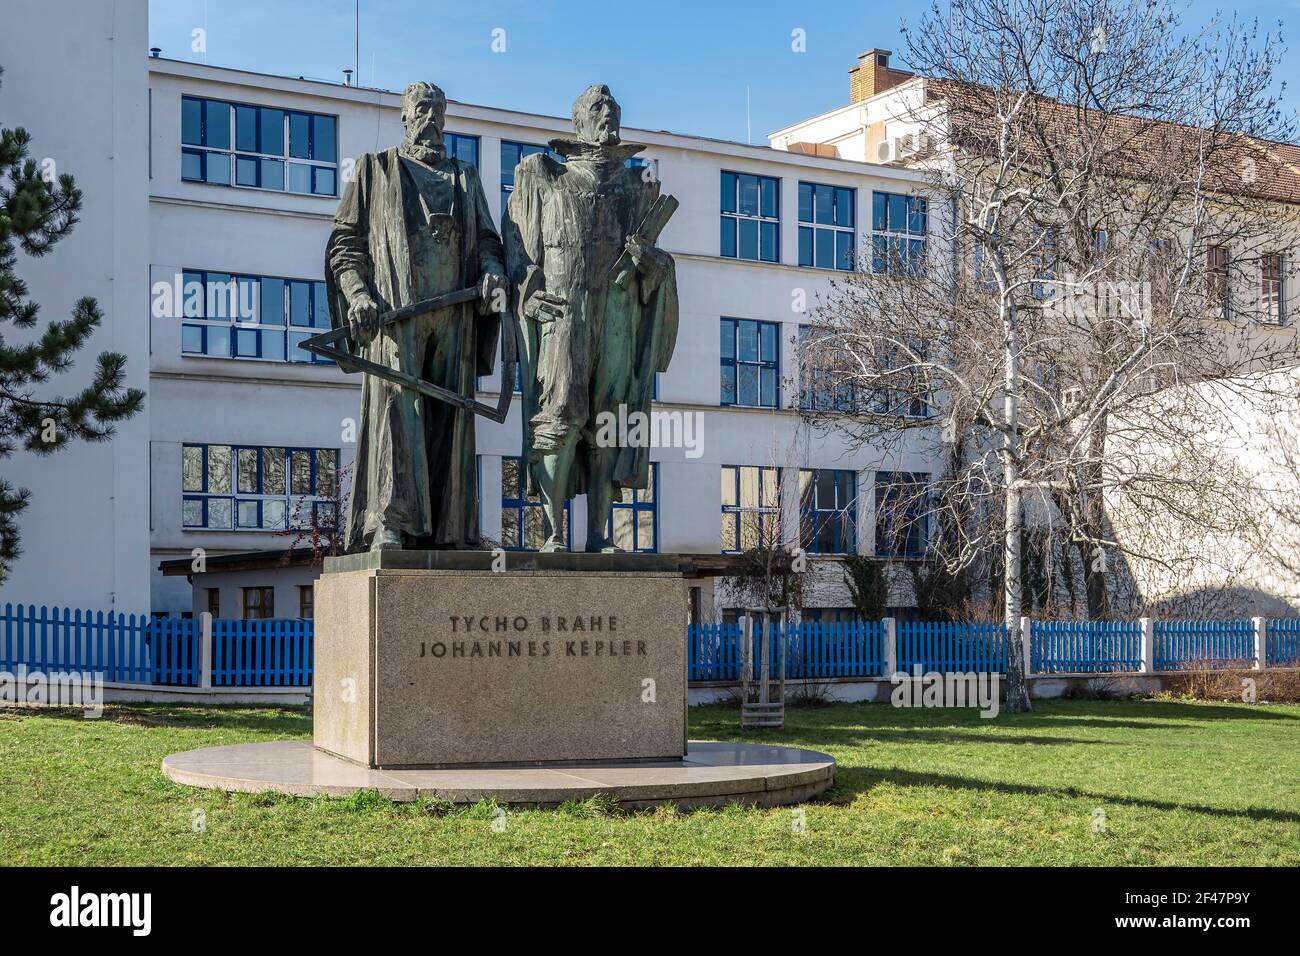 Praga, Repubblica Ceca - 6 marzo 2021: Statue di Tycho Brahe e Johannes Keplero Foto Stock